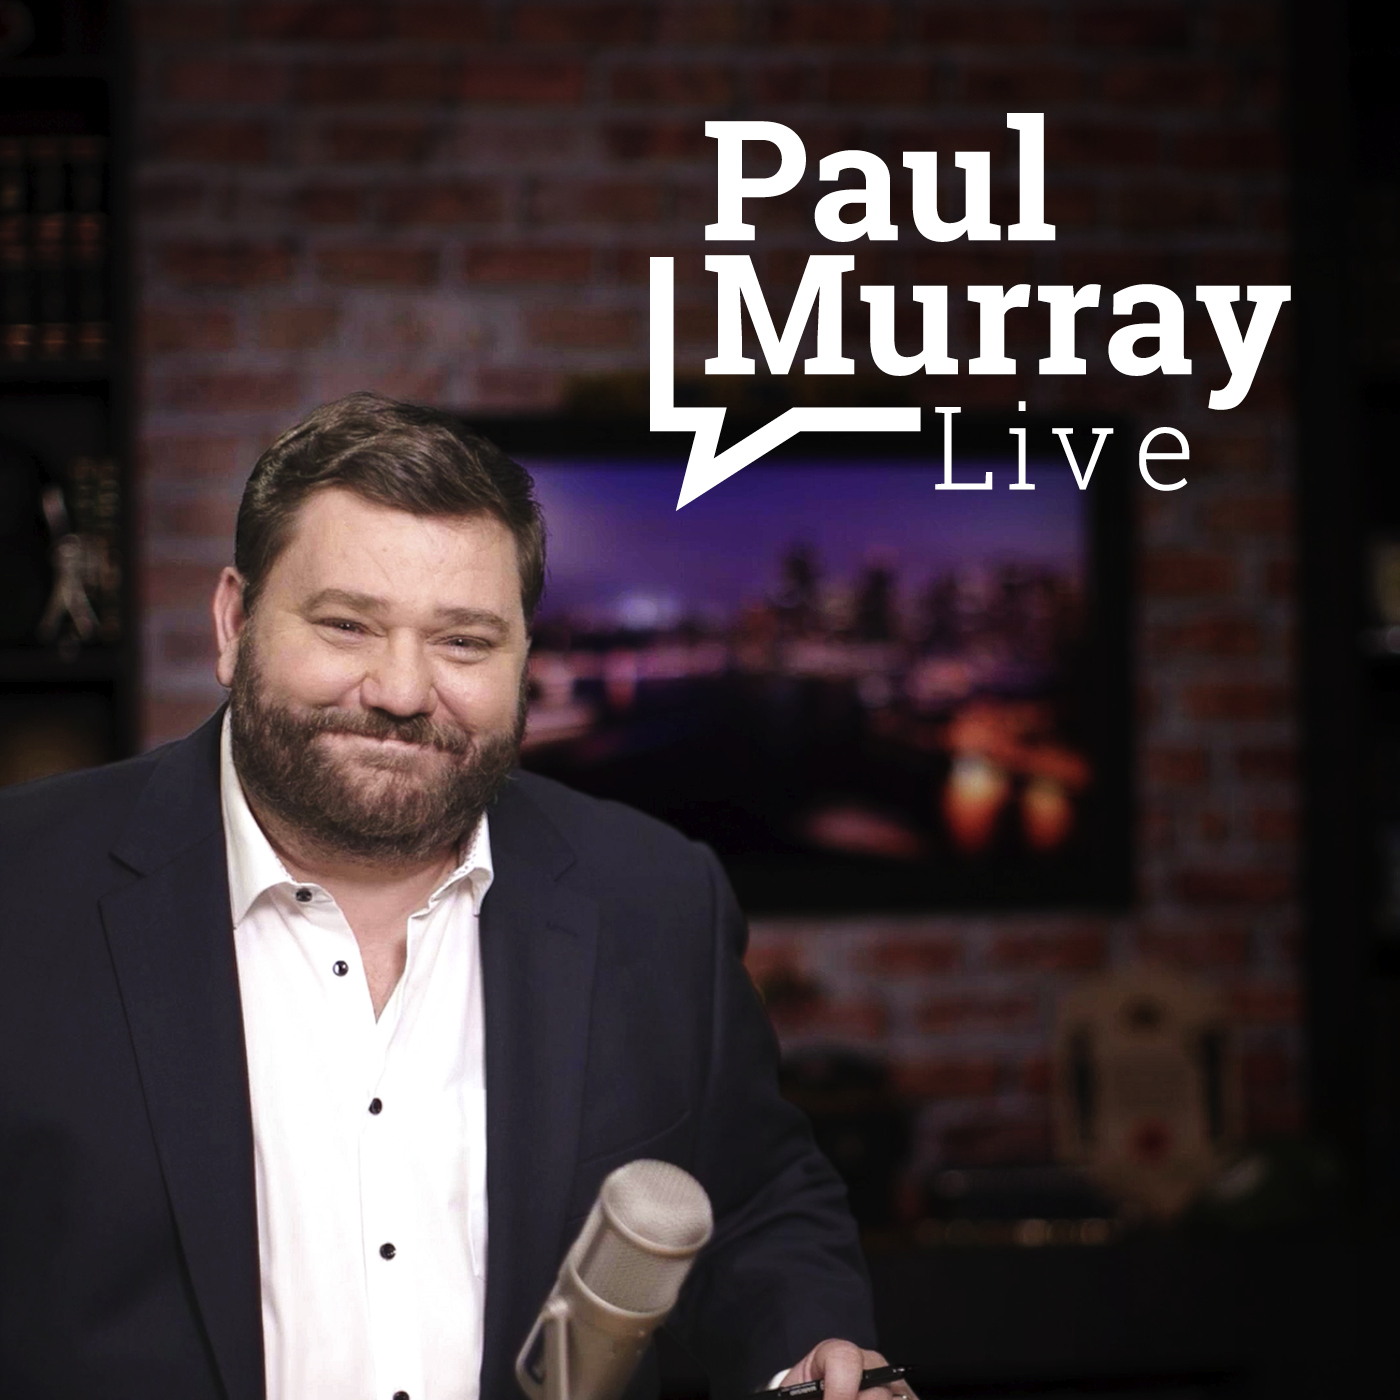 Paul Murray Live, Thursday 18 August